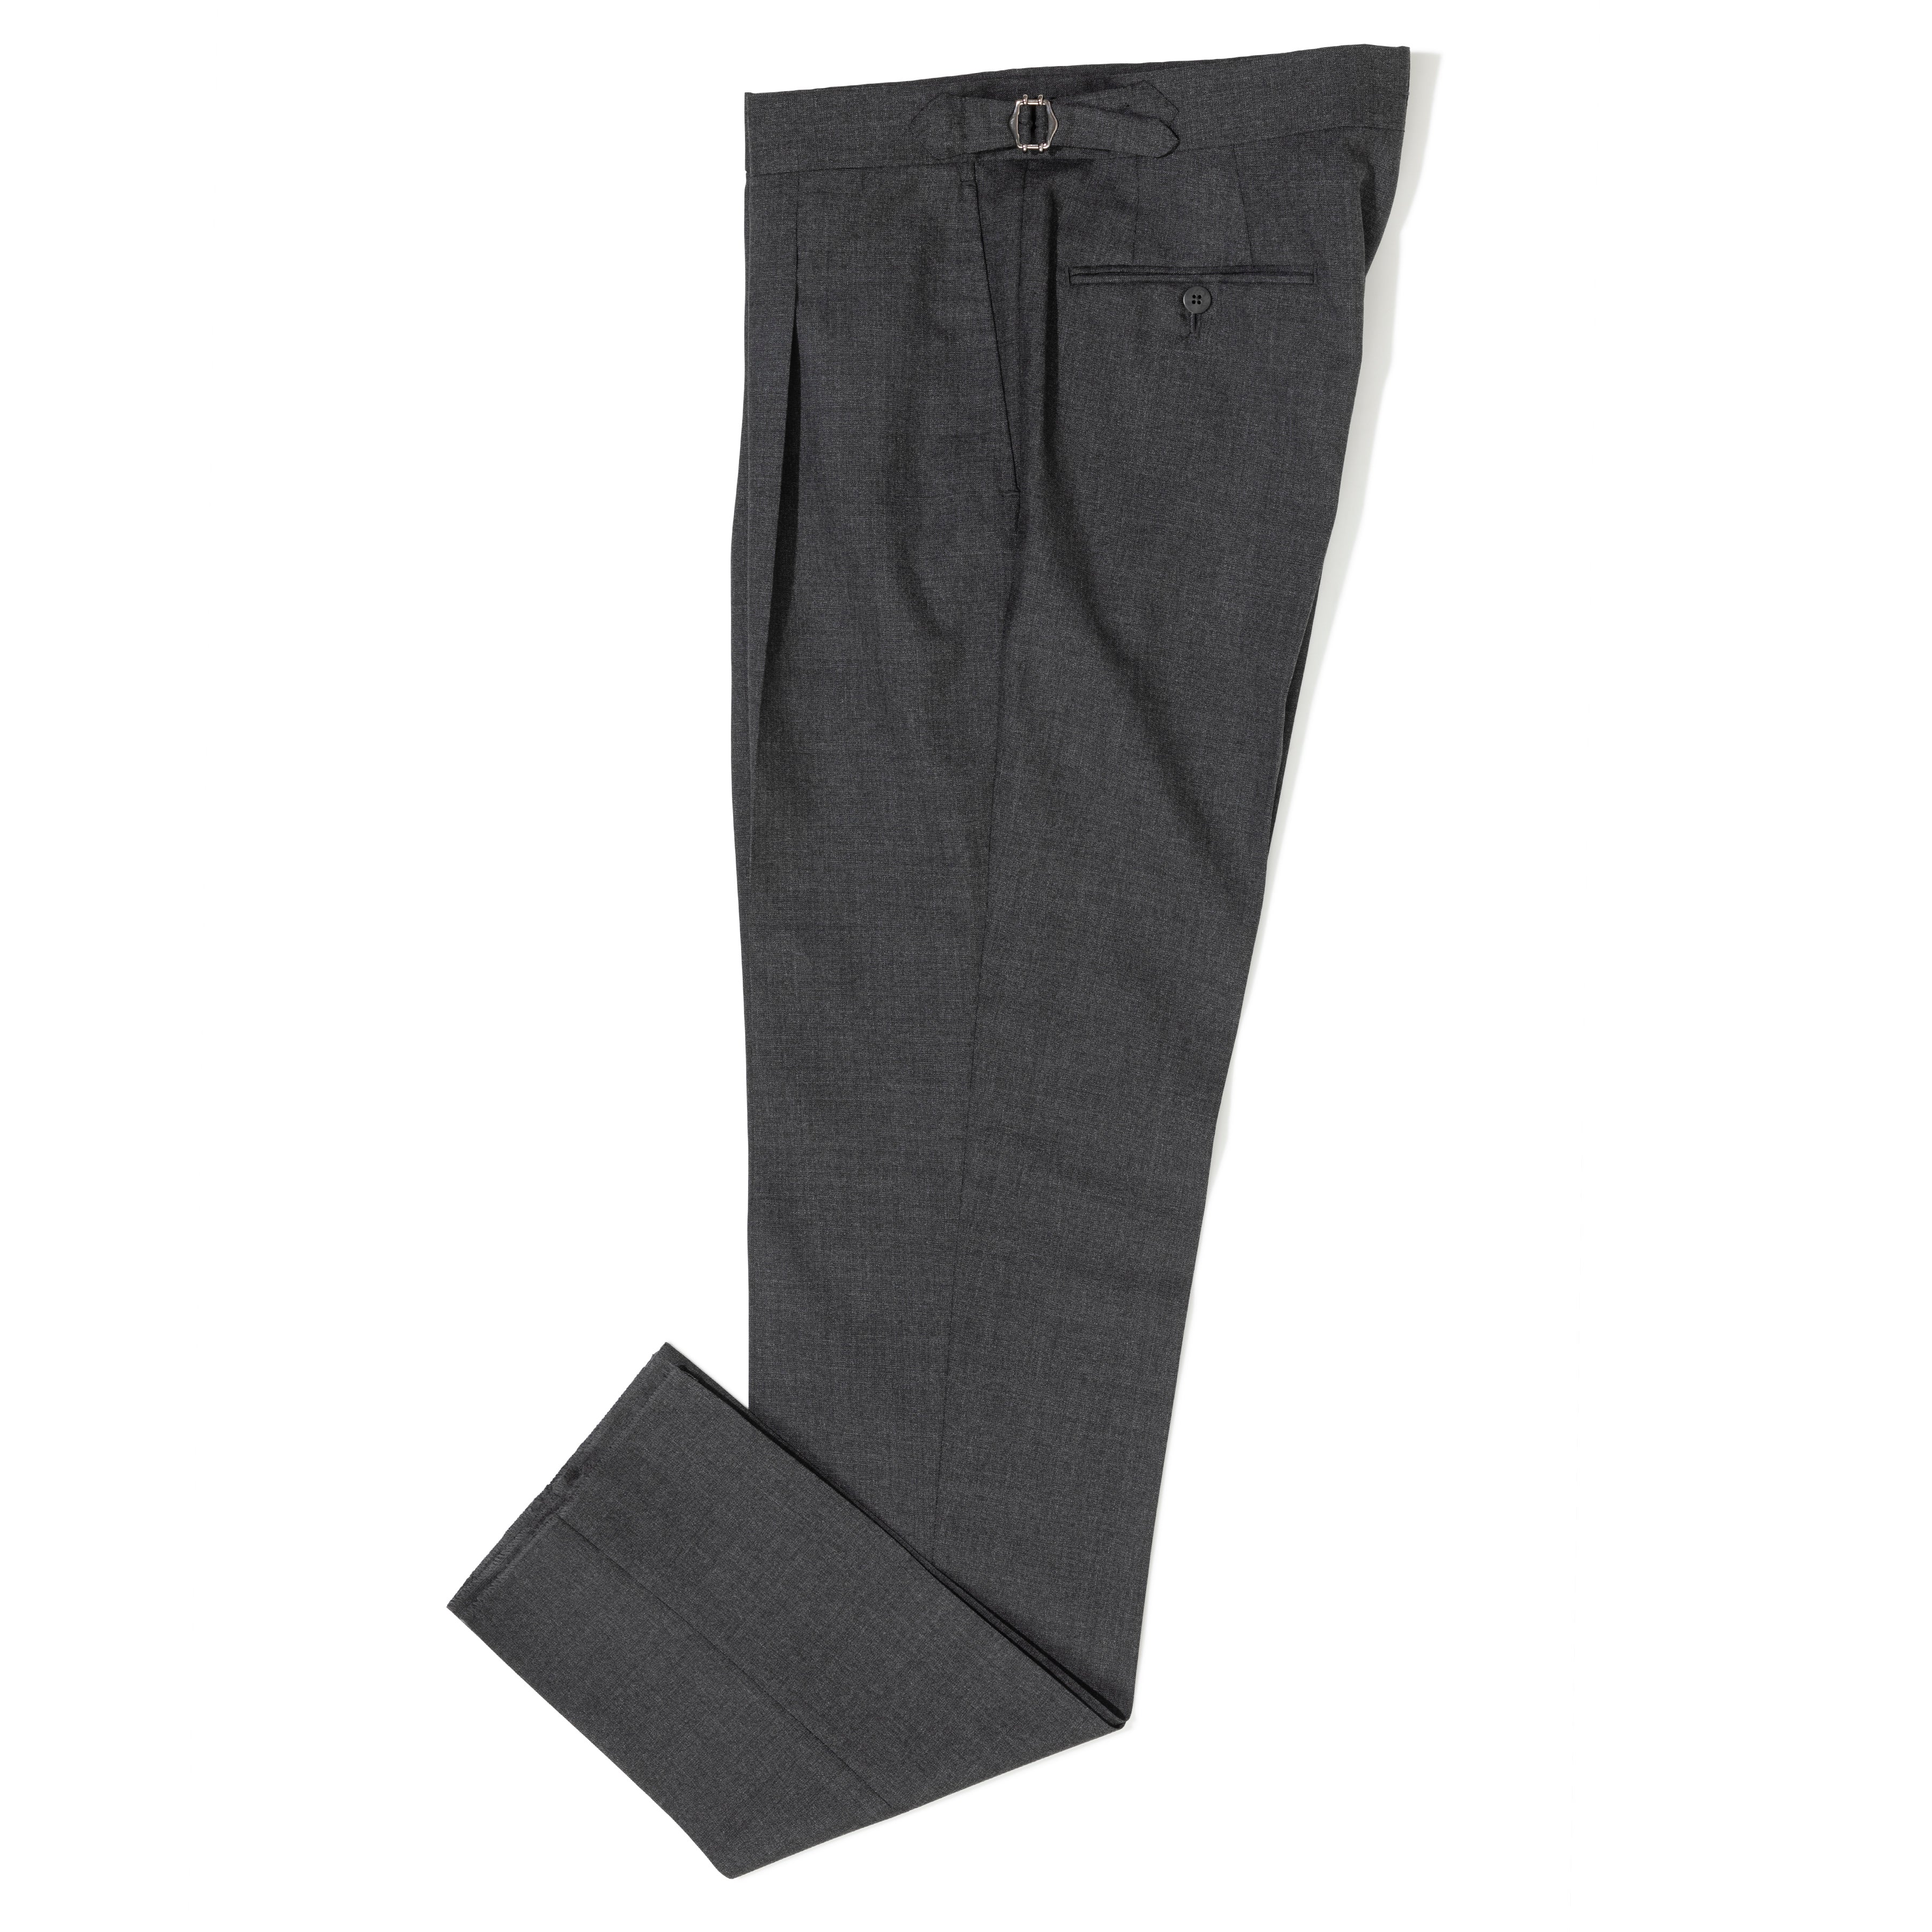 Wool-blend trousers Slim Fit - Black/Grey marl - Men | H&M IN